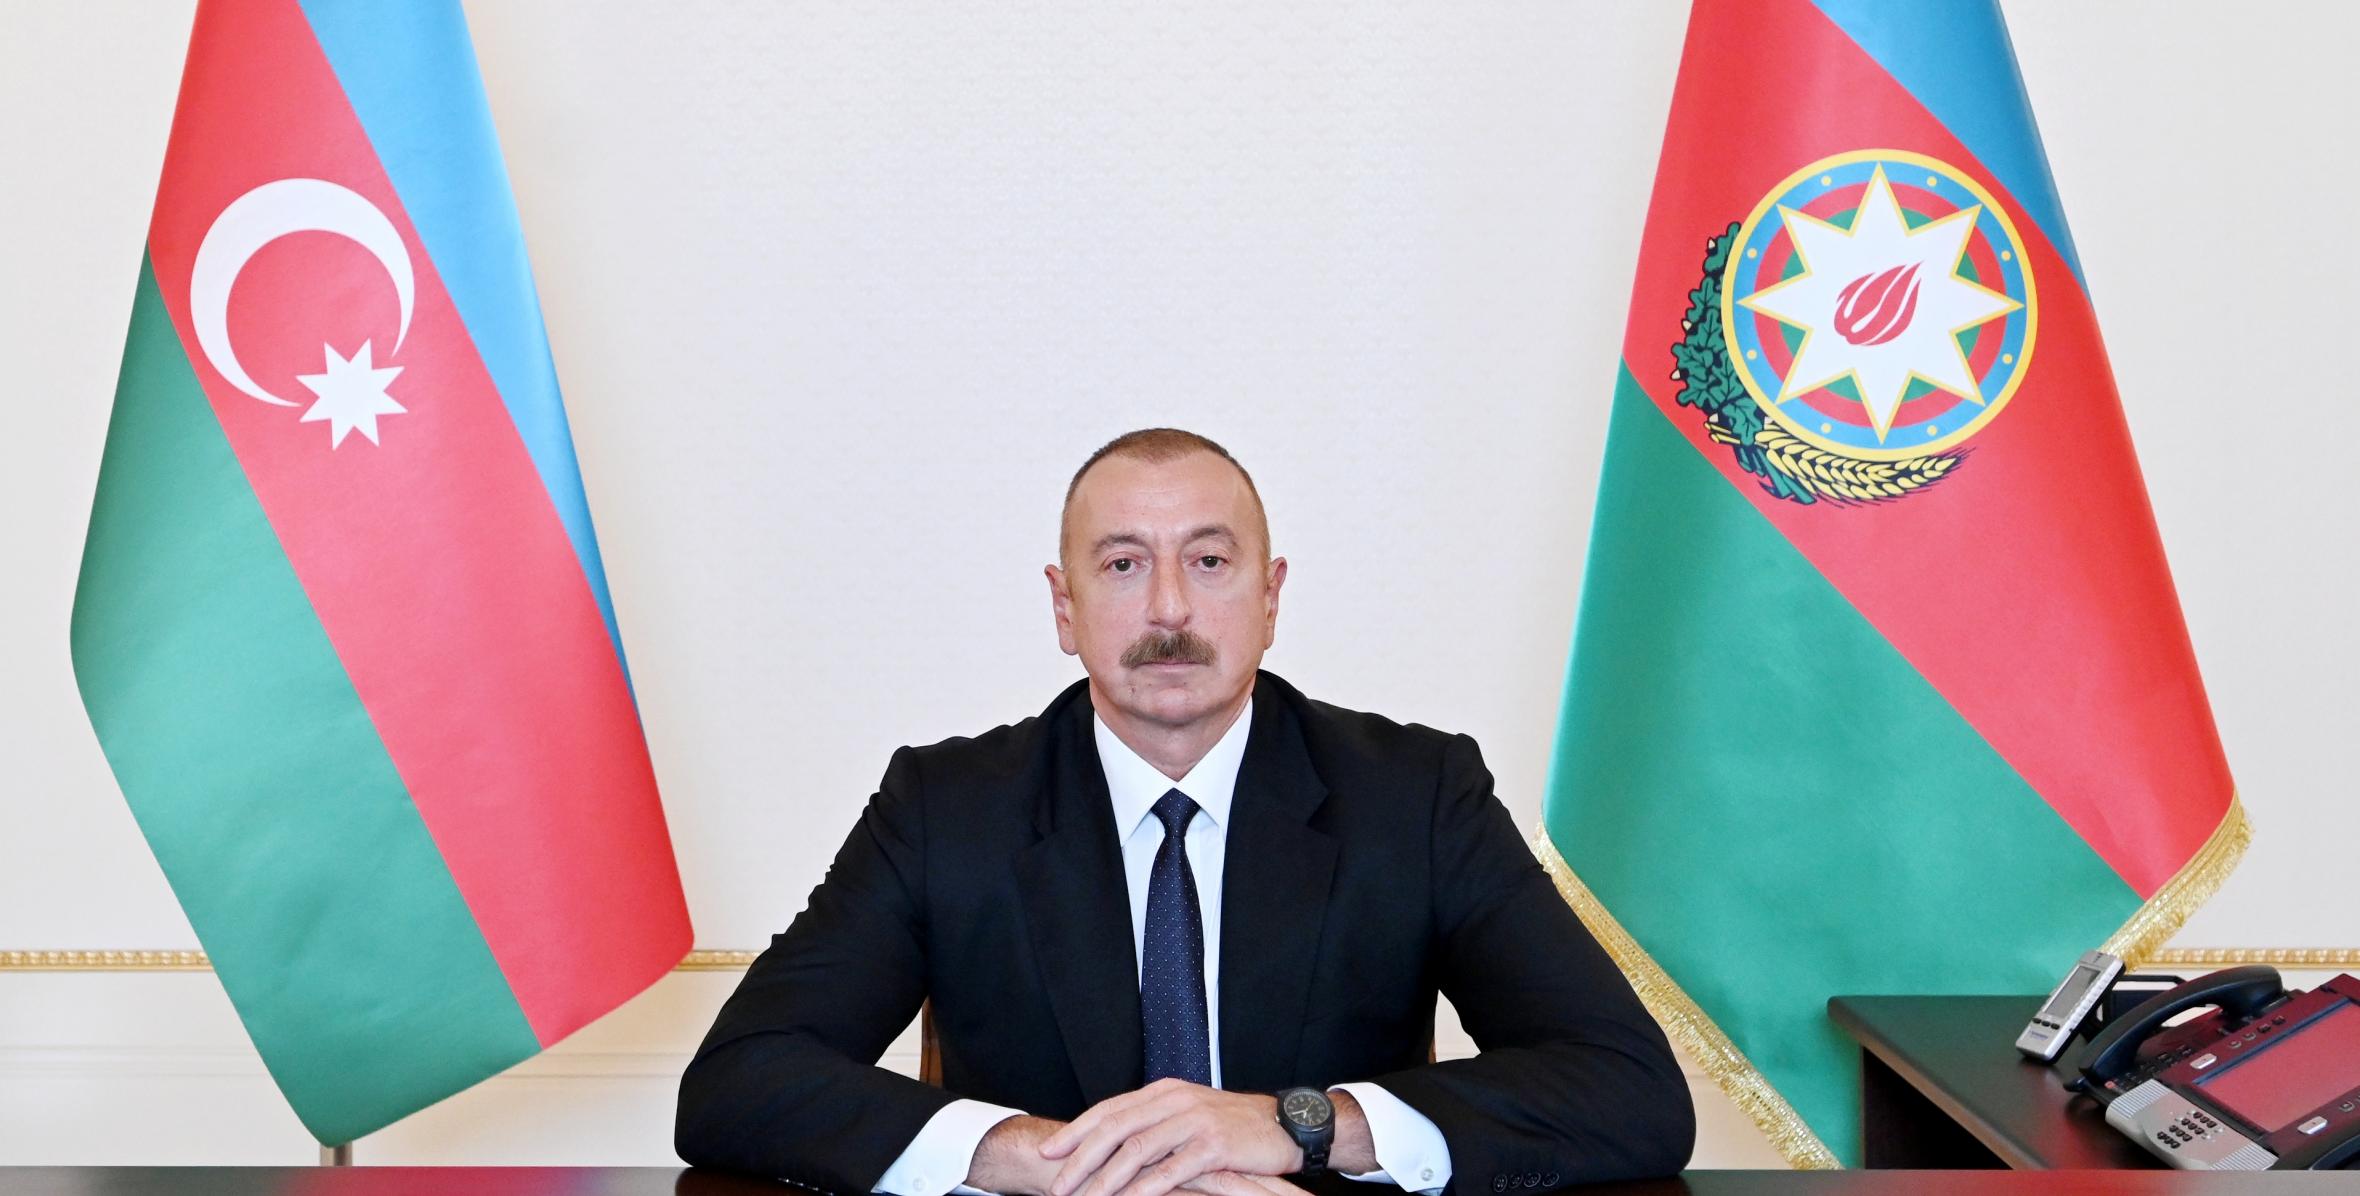 Ilham Aliyev was interviewed by Euronews TV